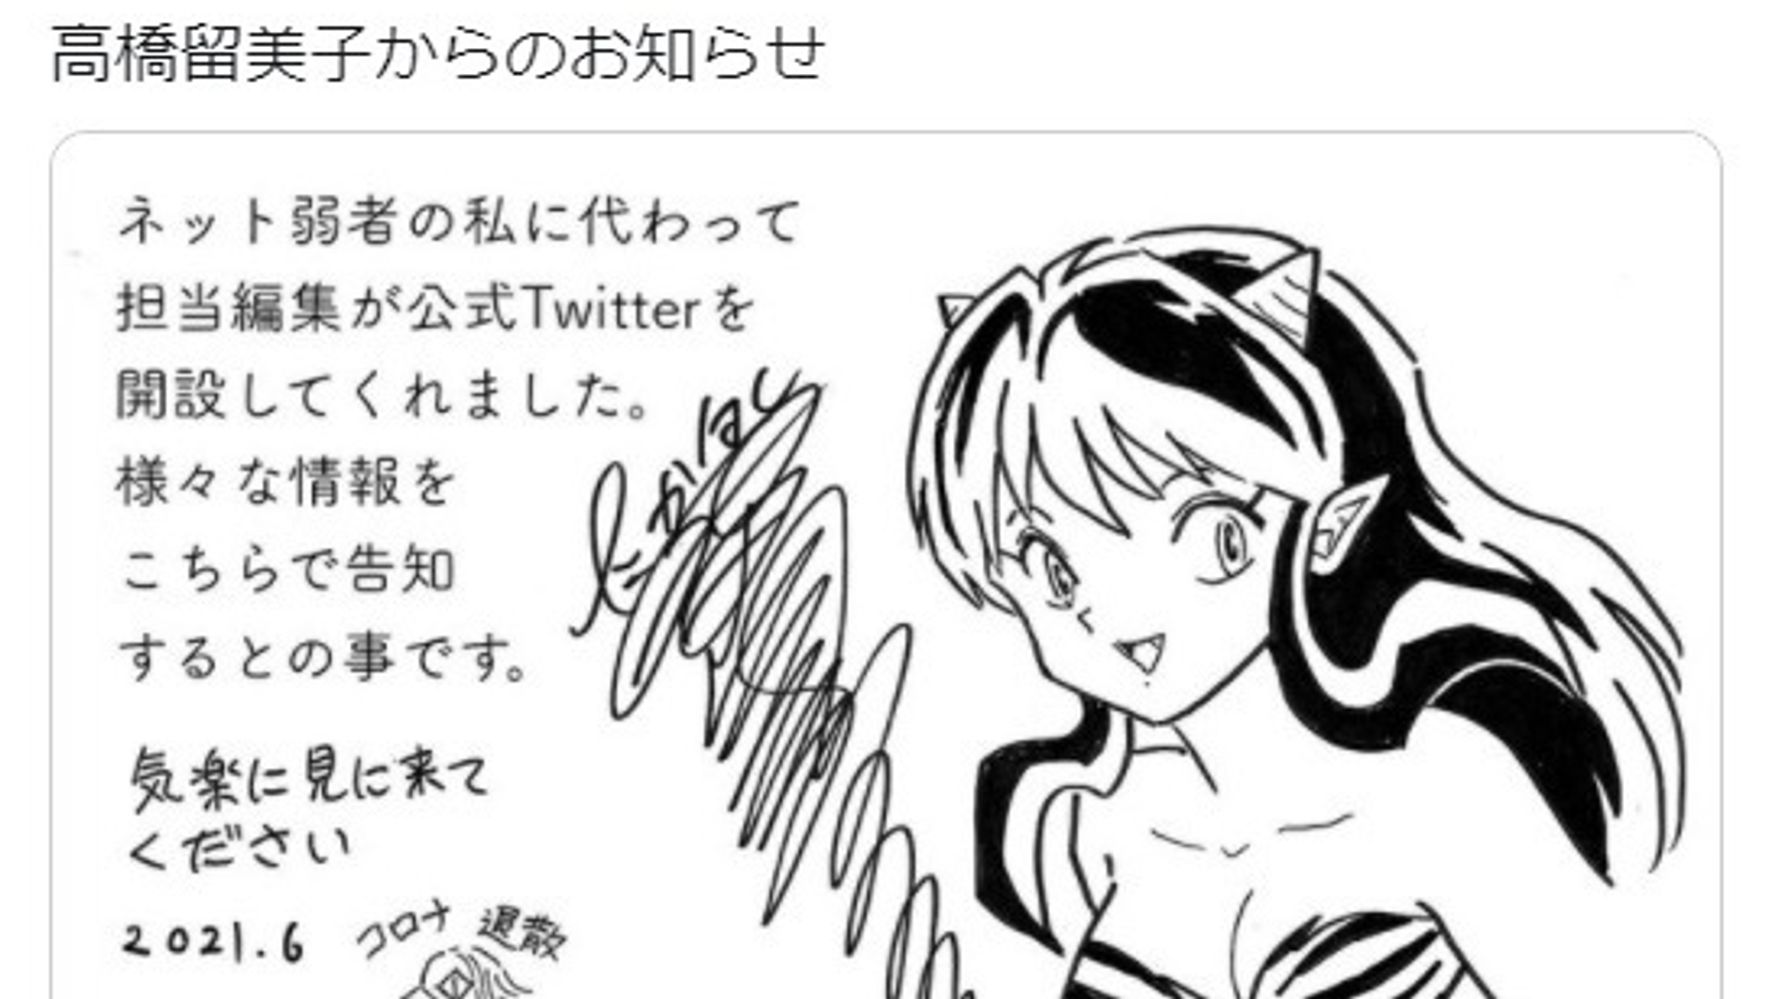 高橋留美子さん公式twitter開設 うる星やつら の絵を投稿 夢のようなお知らせだっちゃ とファン歓喜 ハフポスト アートとカルチャー